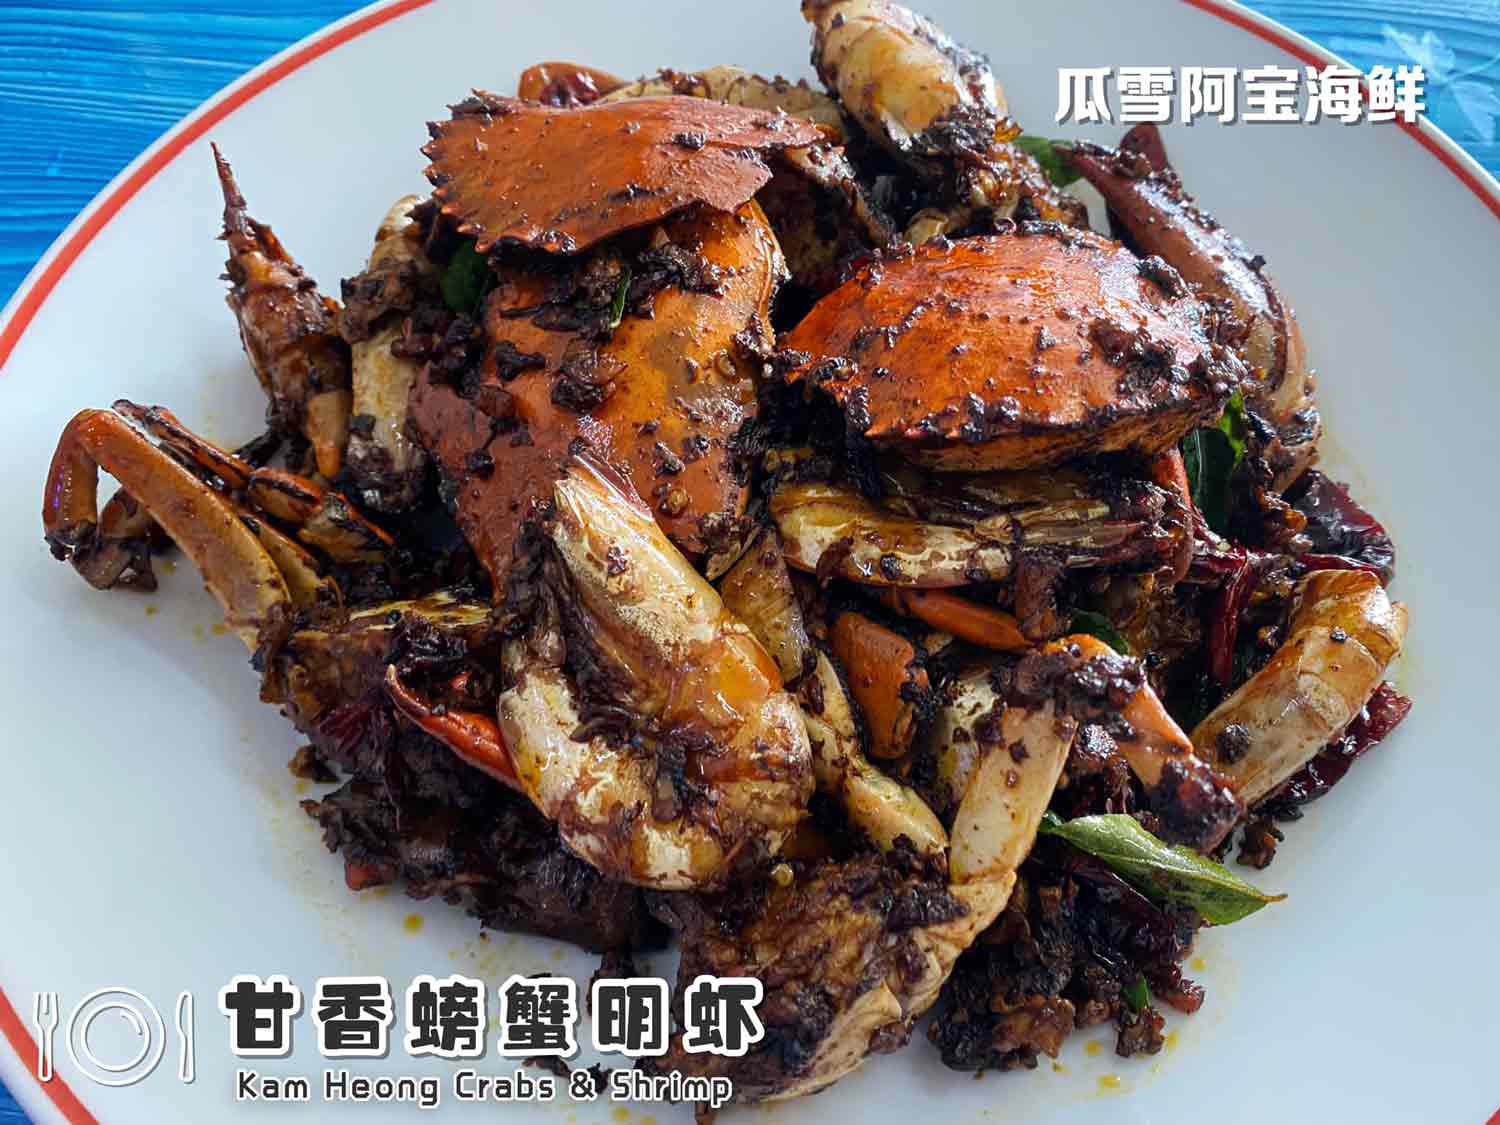 Kam Heong Crabs & Shrimp 